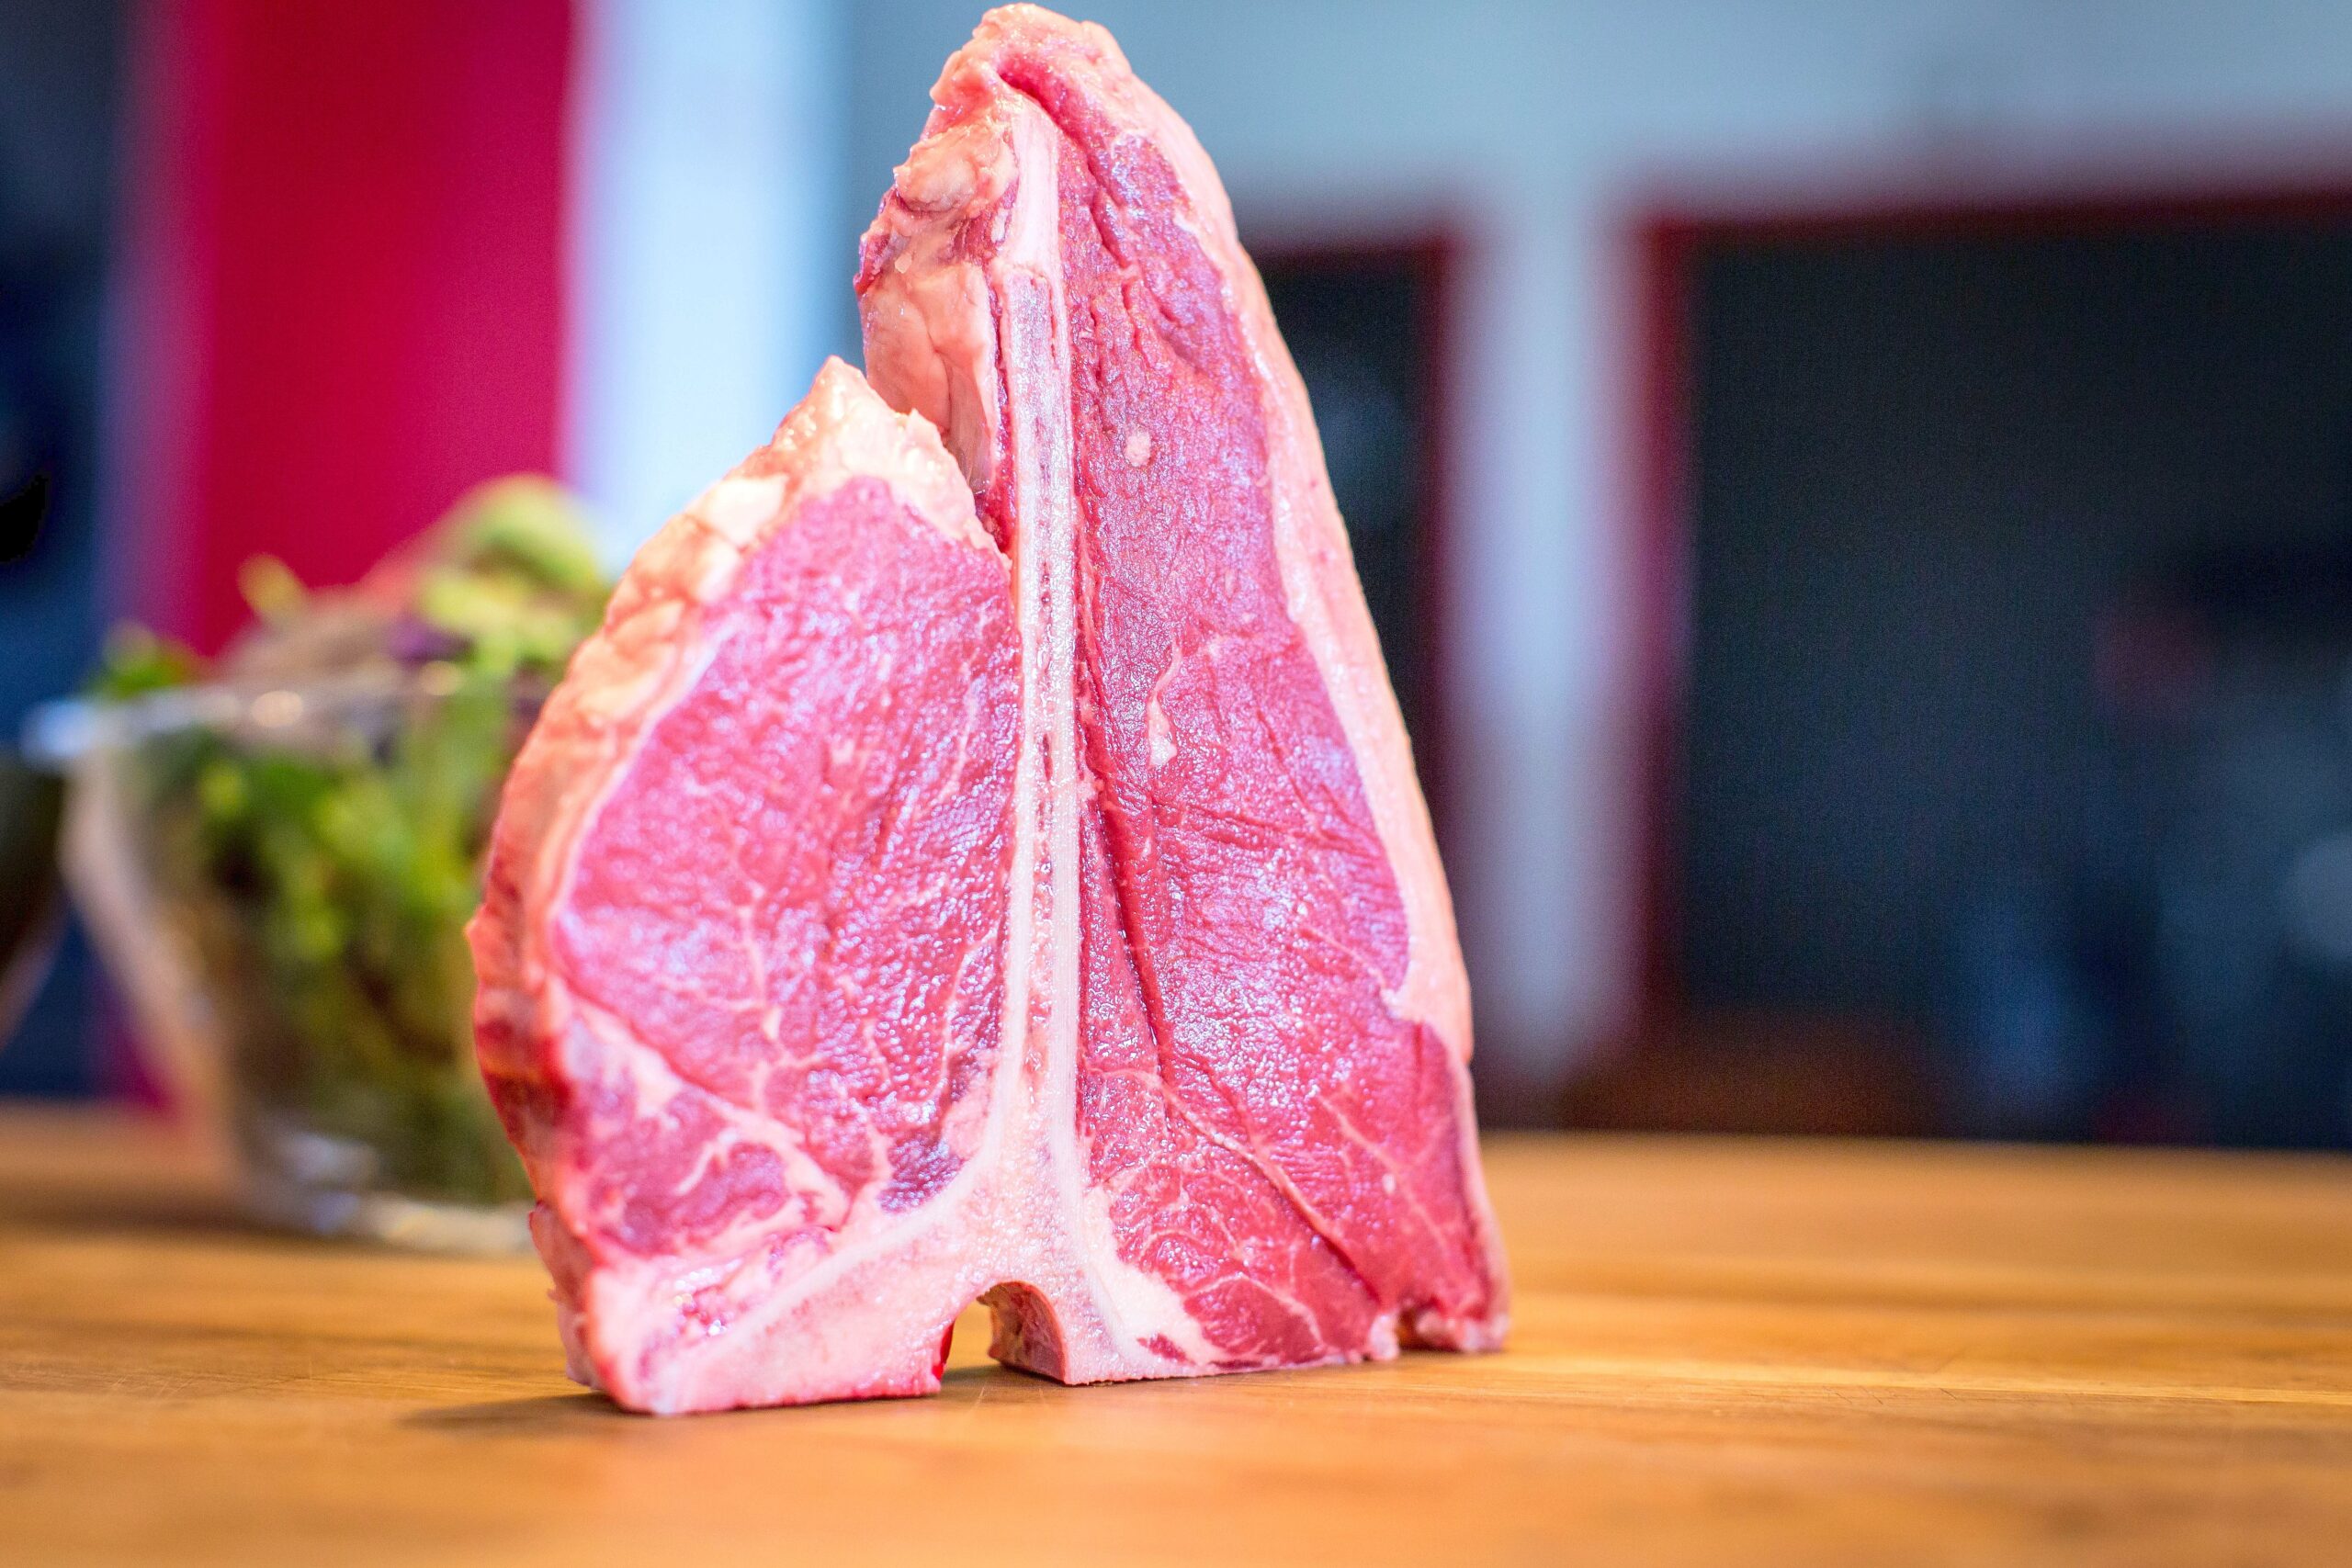 So sieht ein Porterhouse Steak aus.